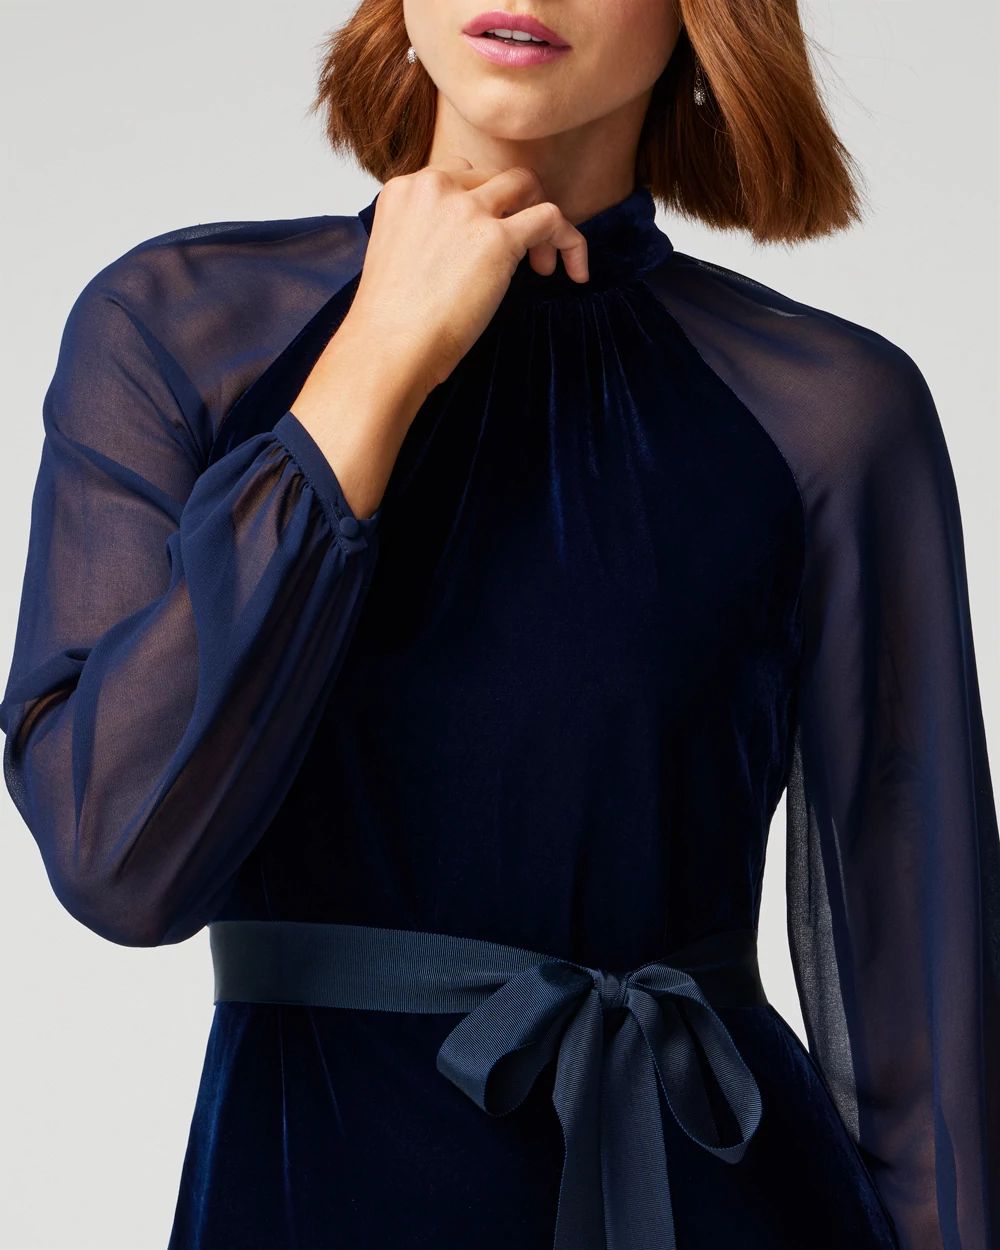 Sheer Sleeve Velvet Mini Dress click to view larger image.